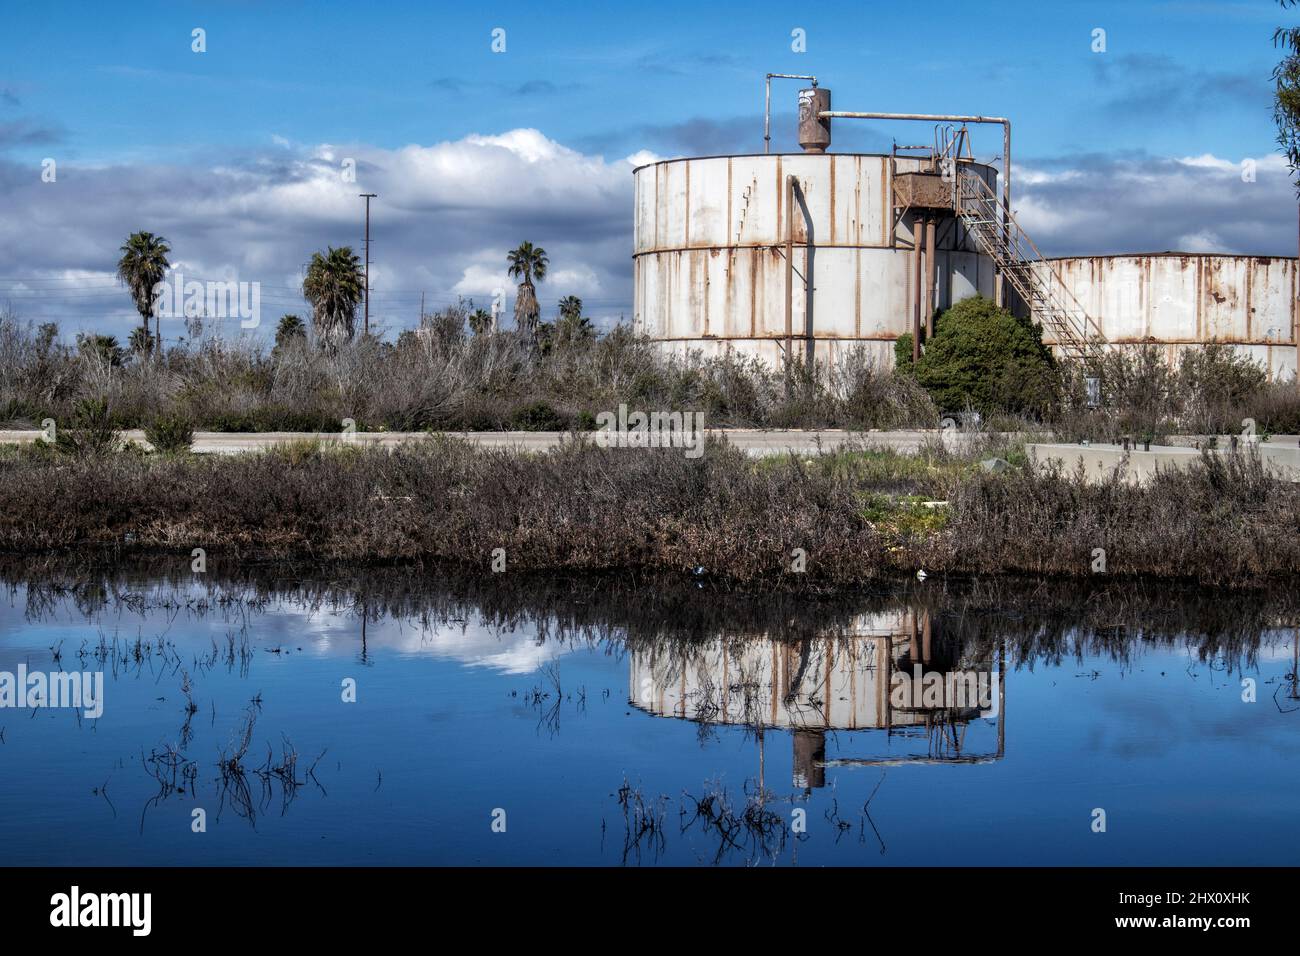 Les terres humides de Los Cerritos, autrefois des terres humides florissantes, sont maintenant la plupart du temps privées et utilisées pour les opérations d'extraction et de traitement du pétrole. Long Beach, Cali Banque D'Images